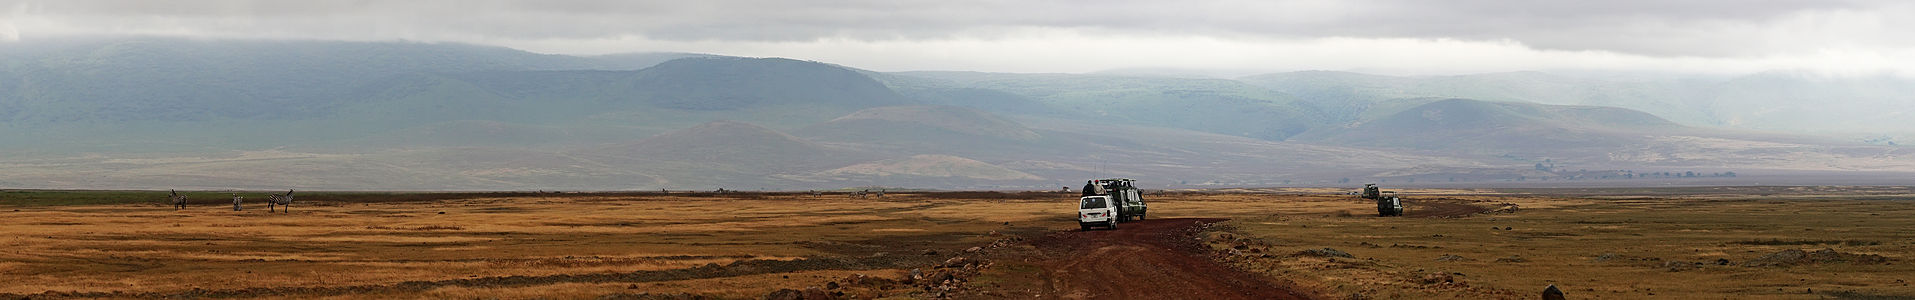 Ngorongoro Crater at Ngorongoro Conservation Area, by Muhammad Mahdi Karim